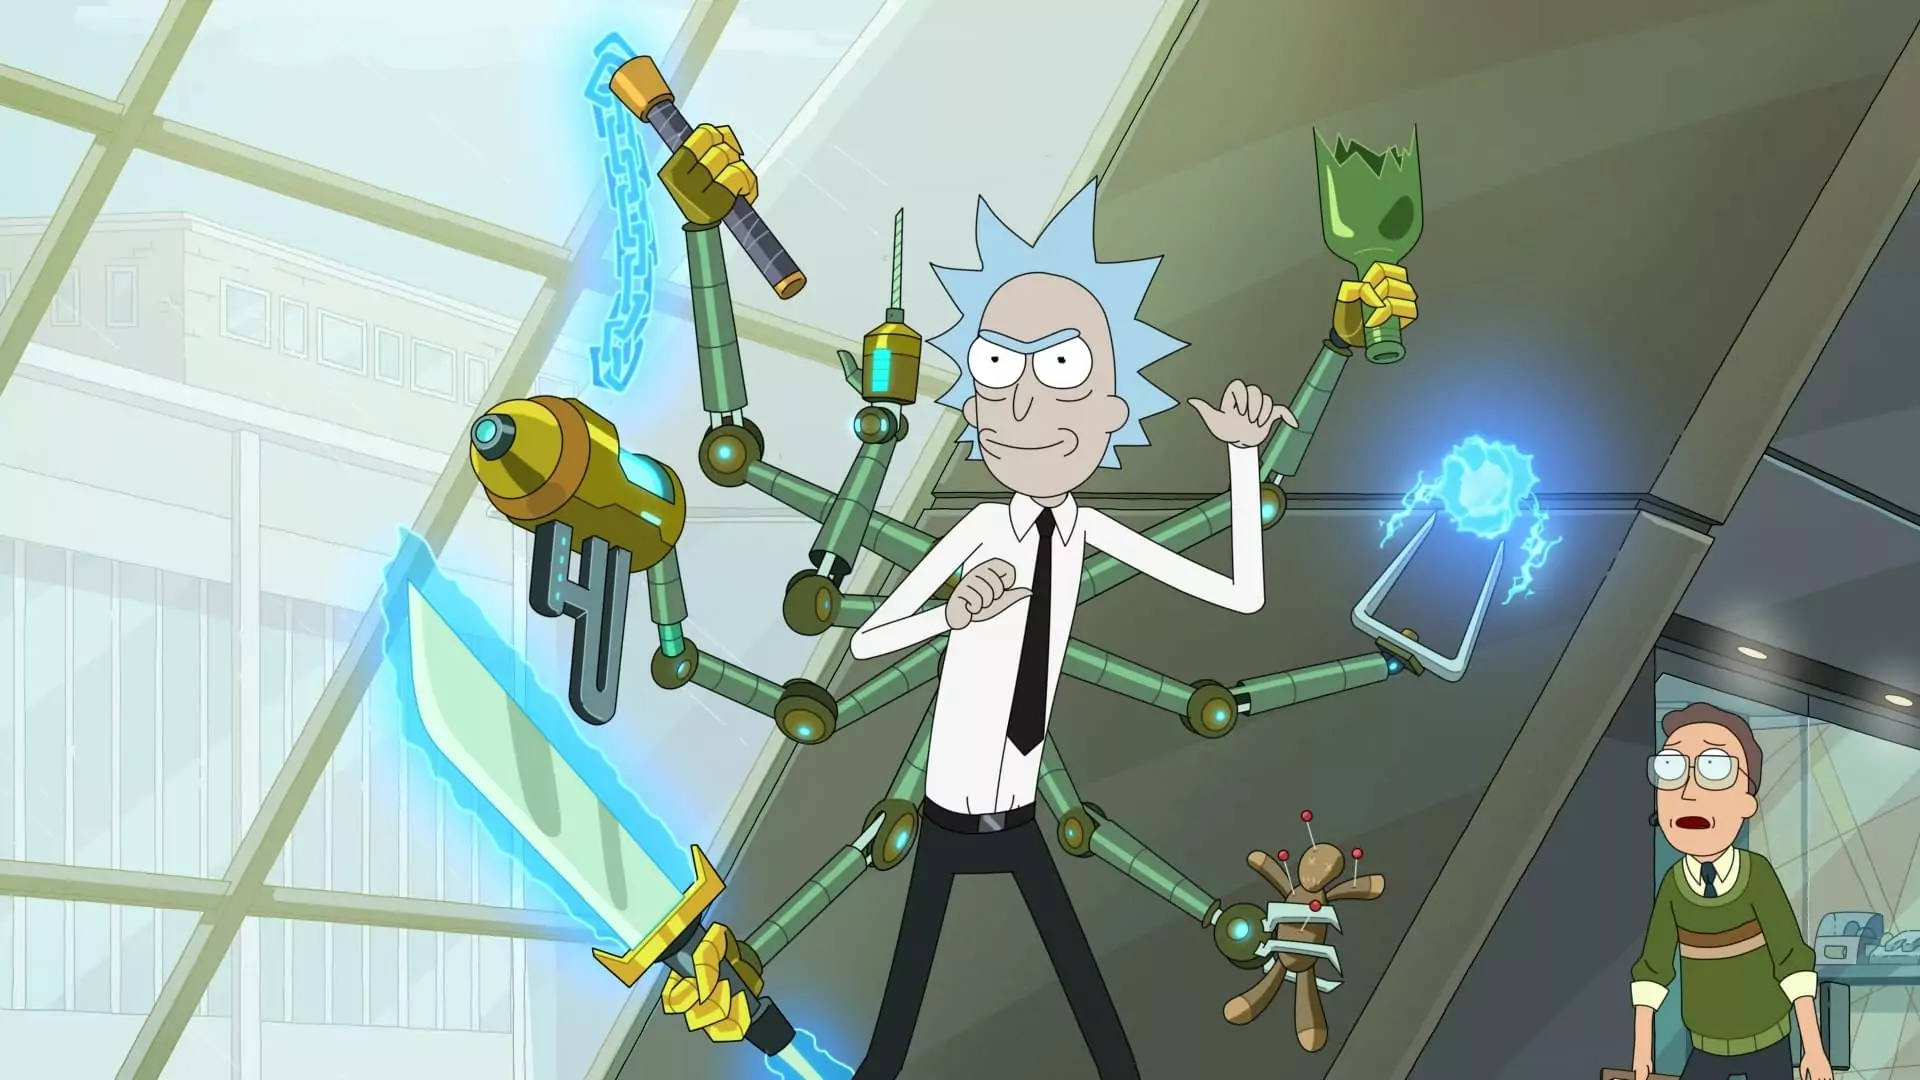 Rick e Morty stagione 7, la recensione: La Rinascita